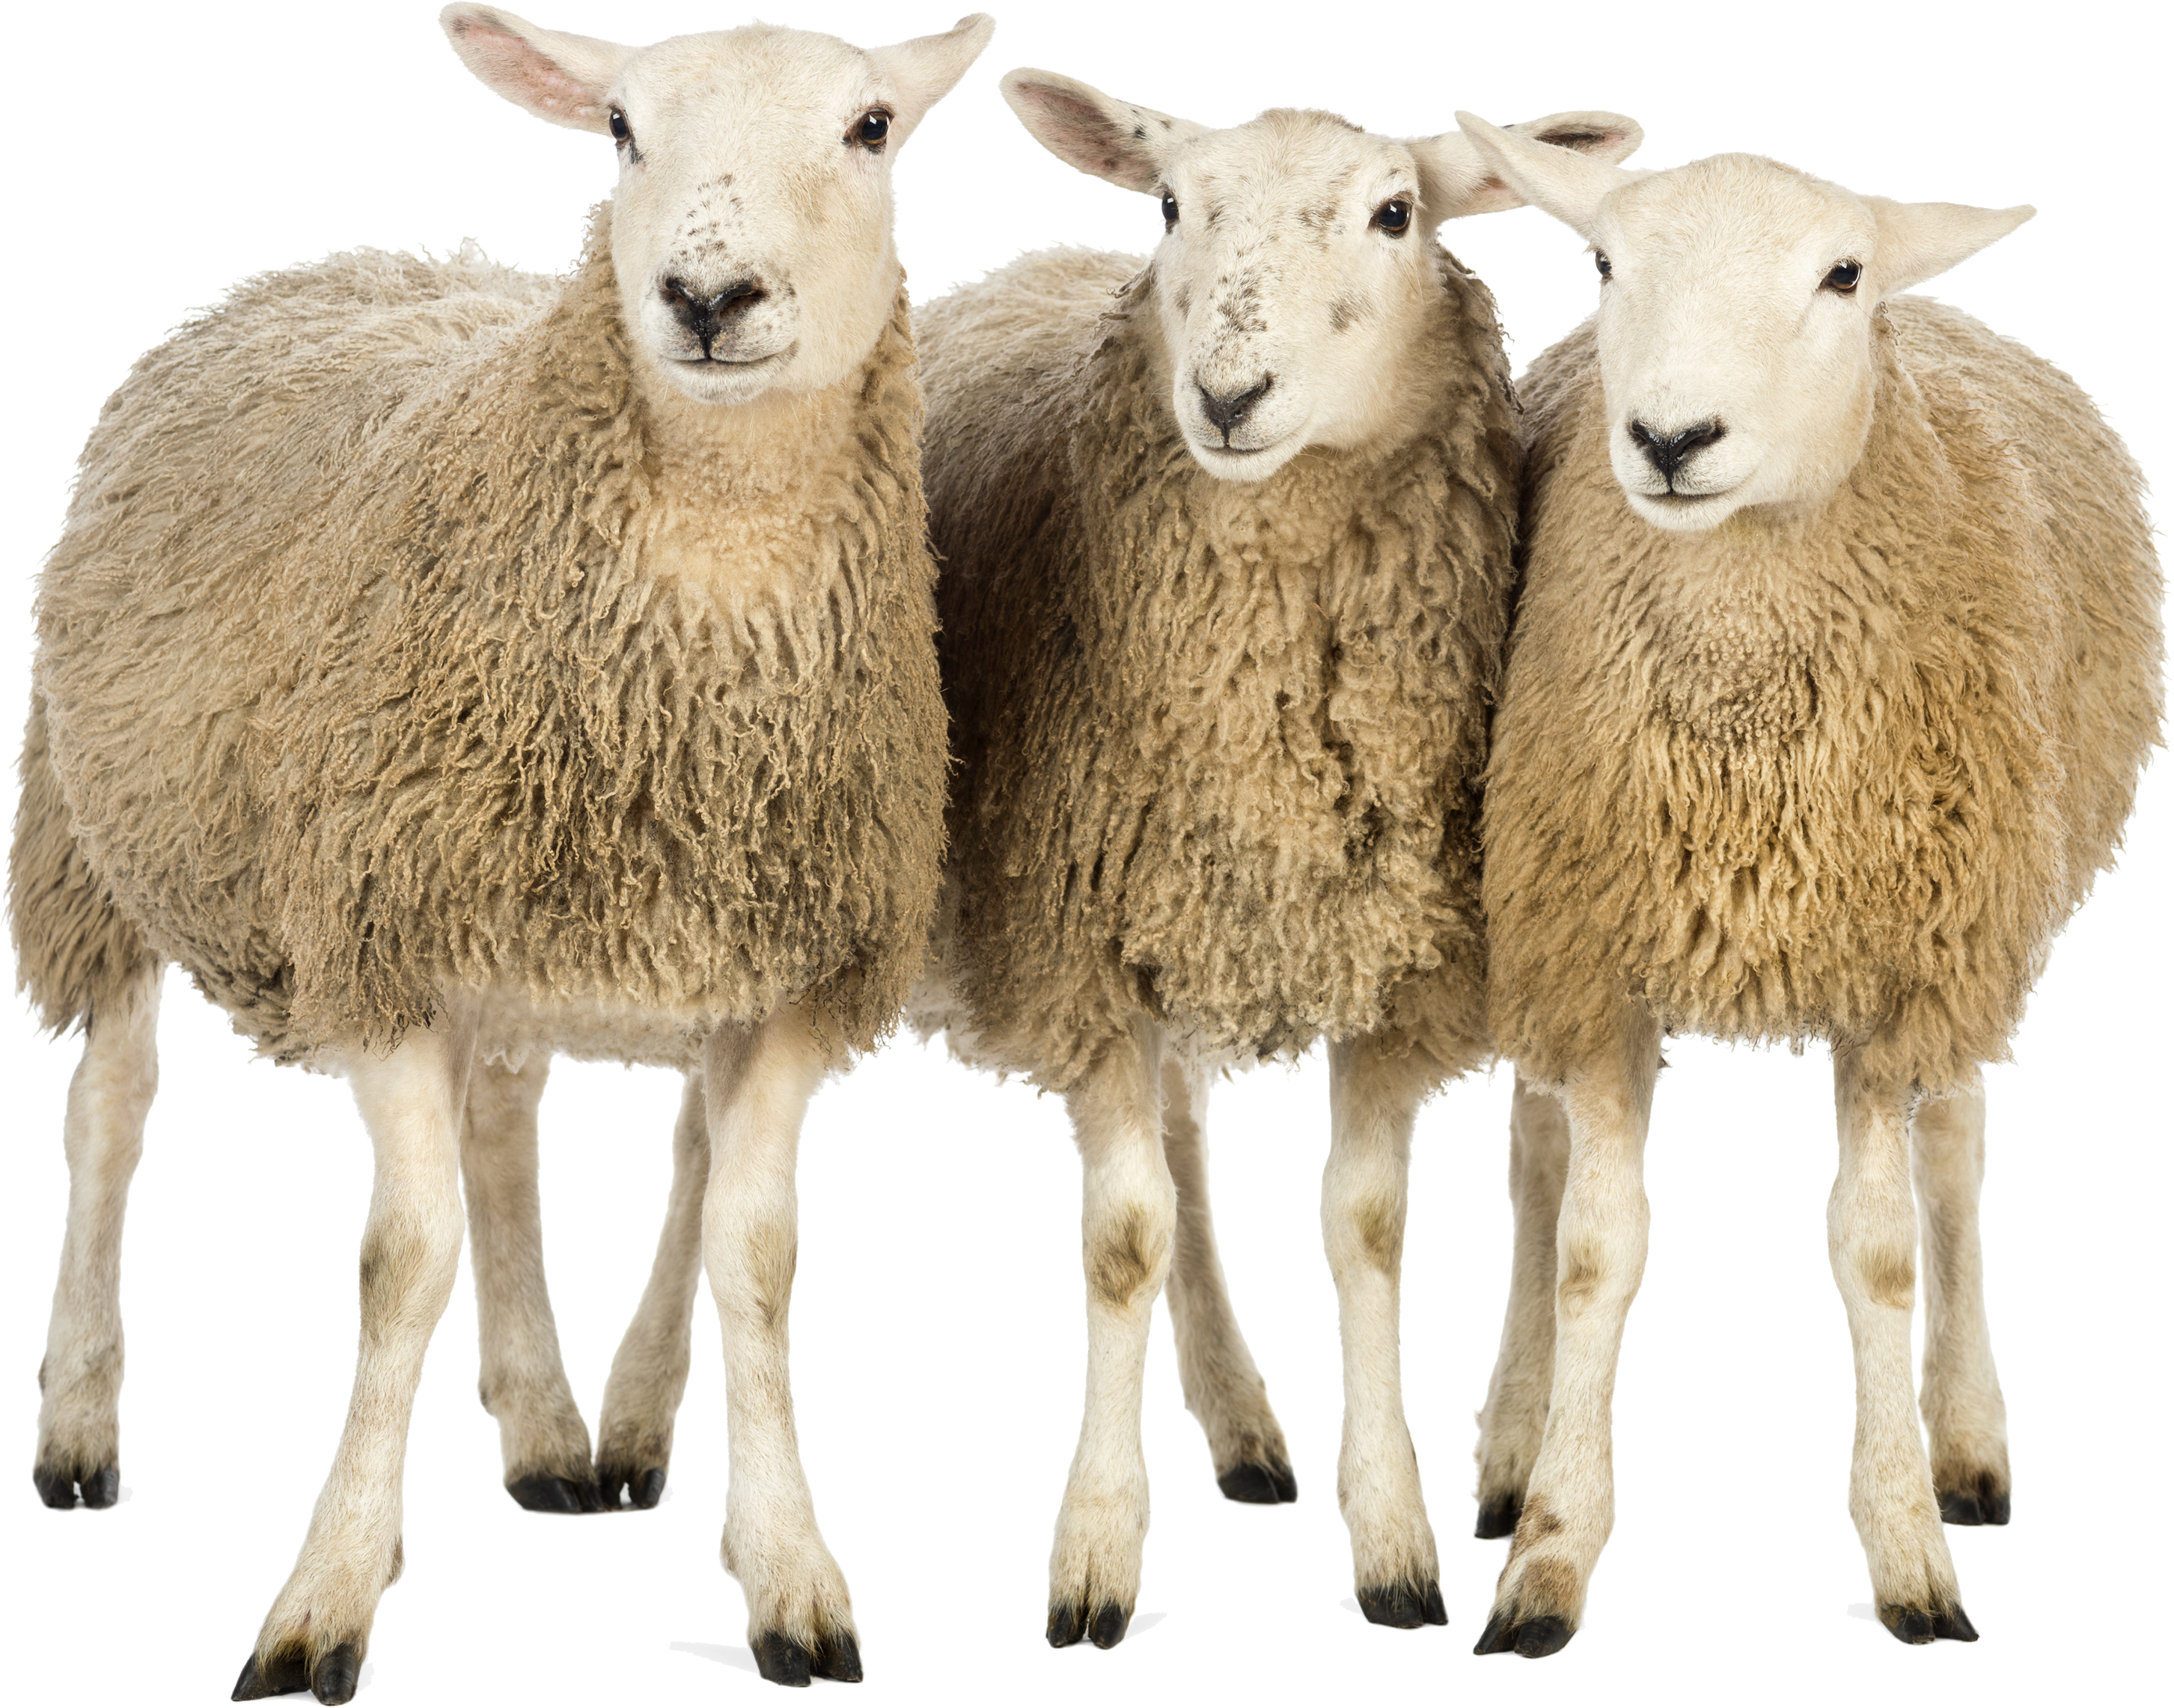 Ba con cừu